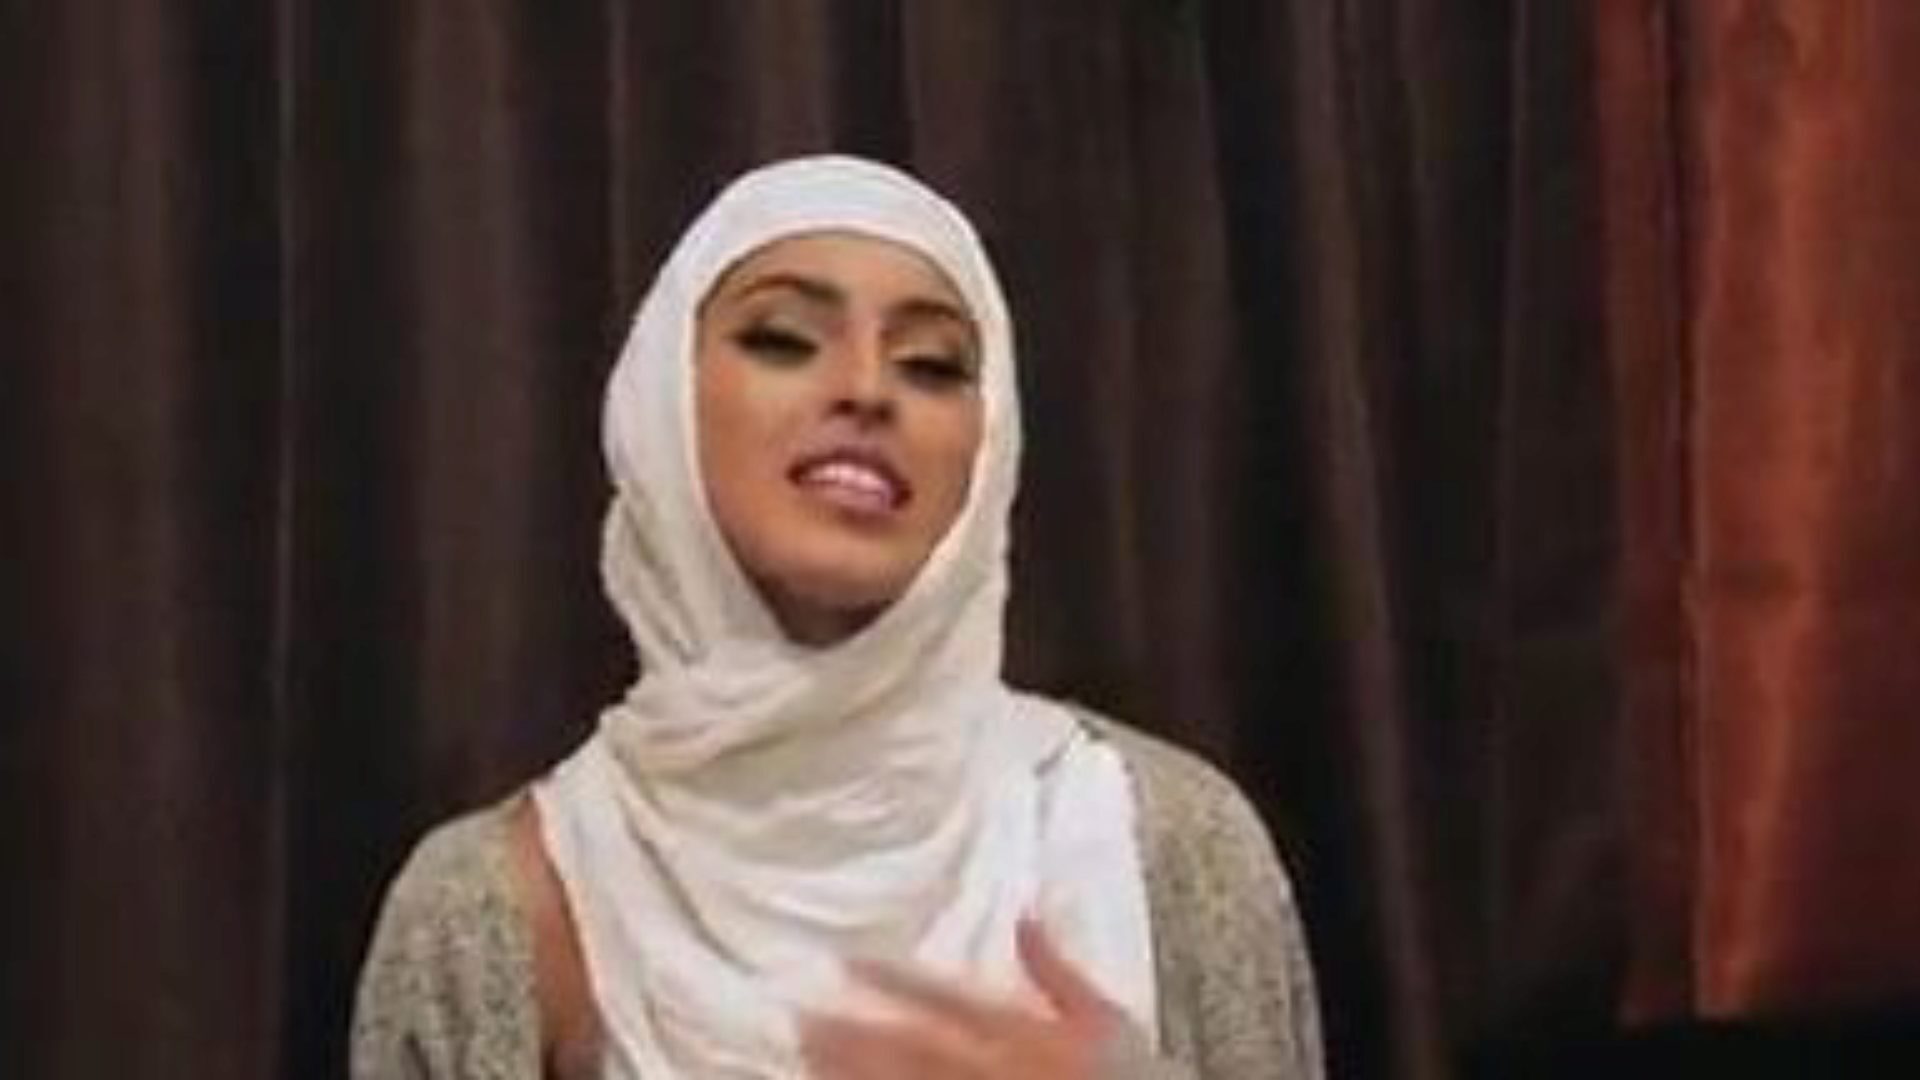 nieśmiałe niedoświadczone dziewczyny pieprzą się w hidżabach: darmowe porno 5e ogląda nieśmiałe niedoświadczone dziewczyny pieprzą się w odcinku hidżabów na xhamster - ostateczne archiwum darmowego xnxx za darmo & bel ami hardcore porno vids